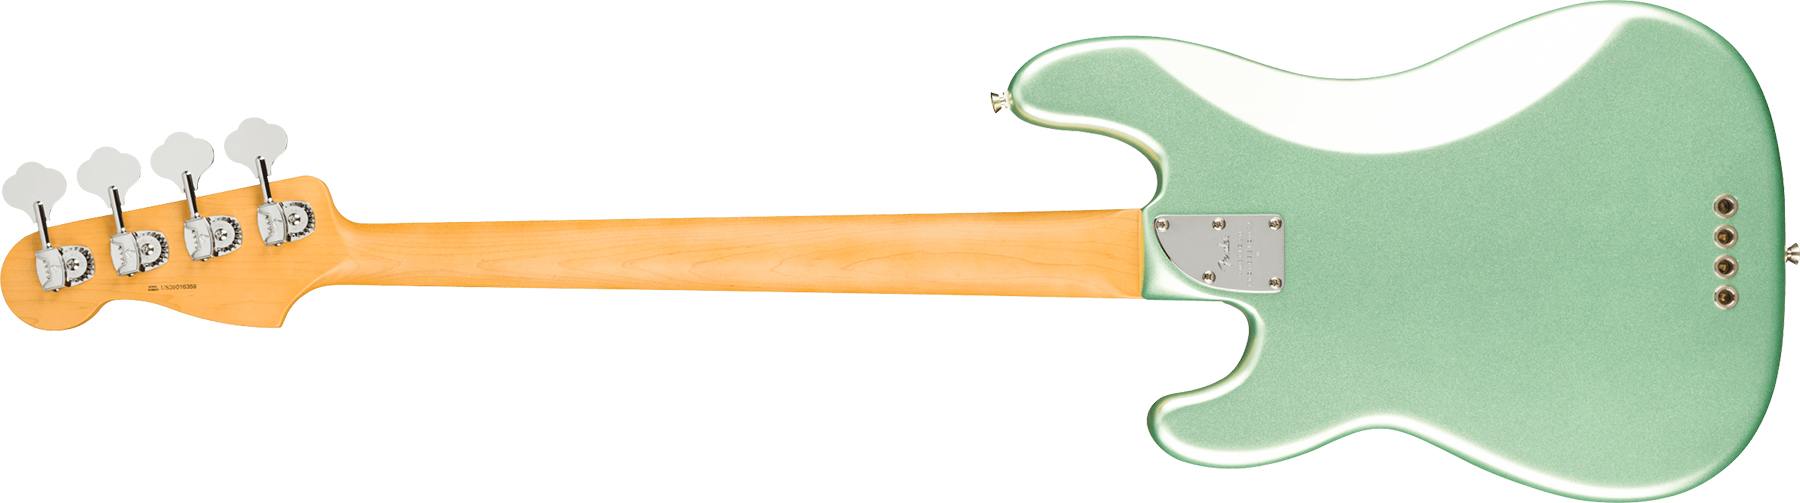 Fender Precision Bass American Professional Ii Usa Rw - Mystic Surf Green - Bajo eléctrico de cuerpo sólido - Variation 1